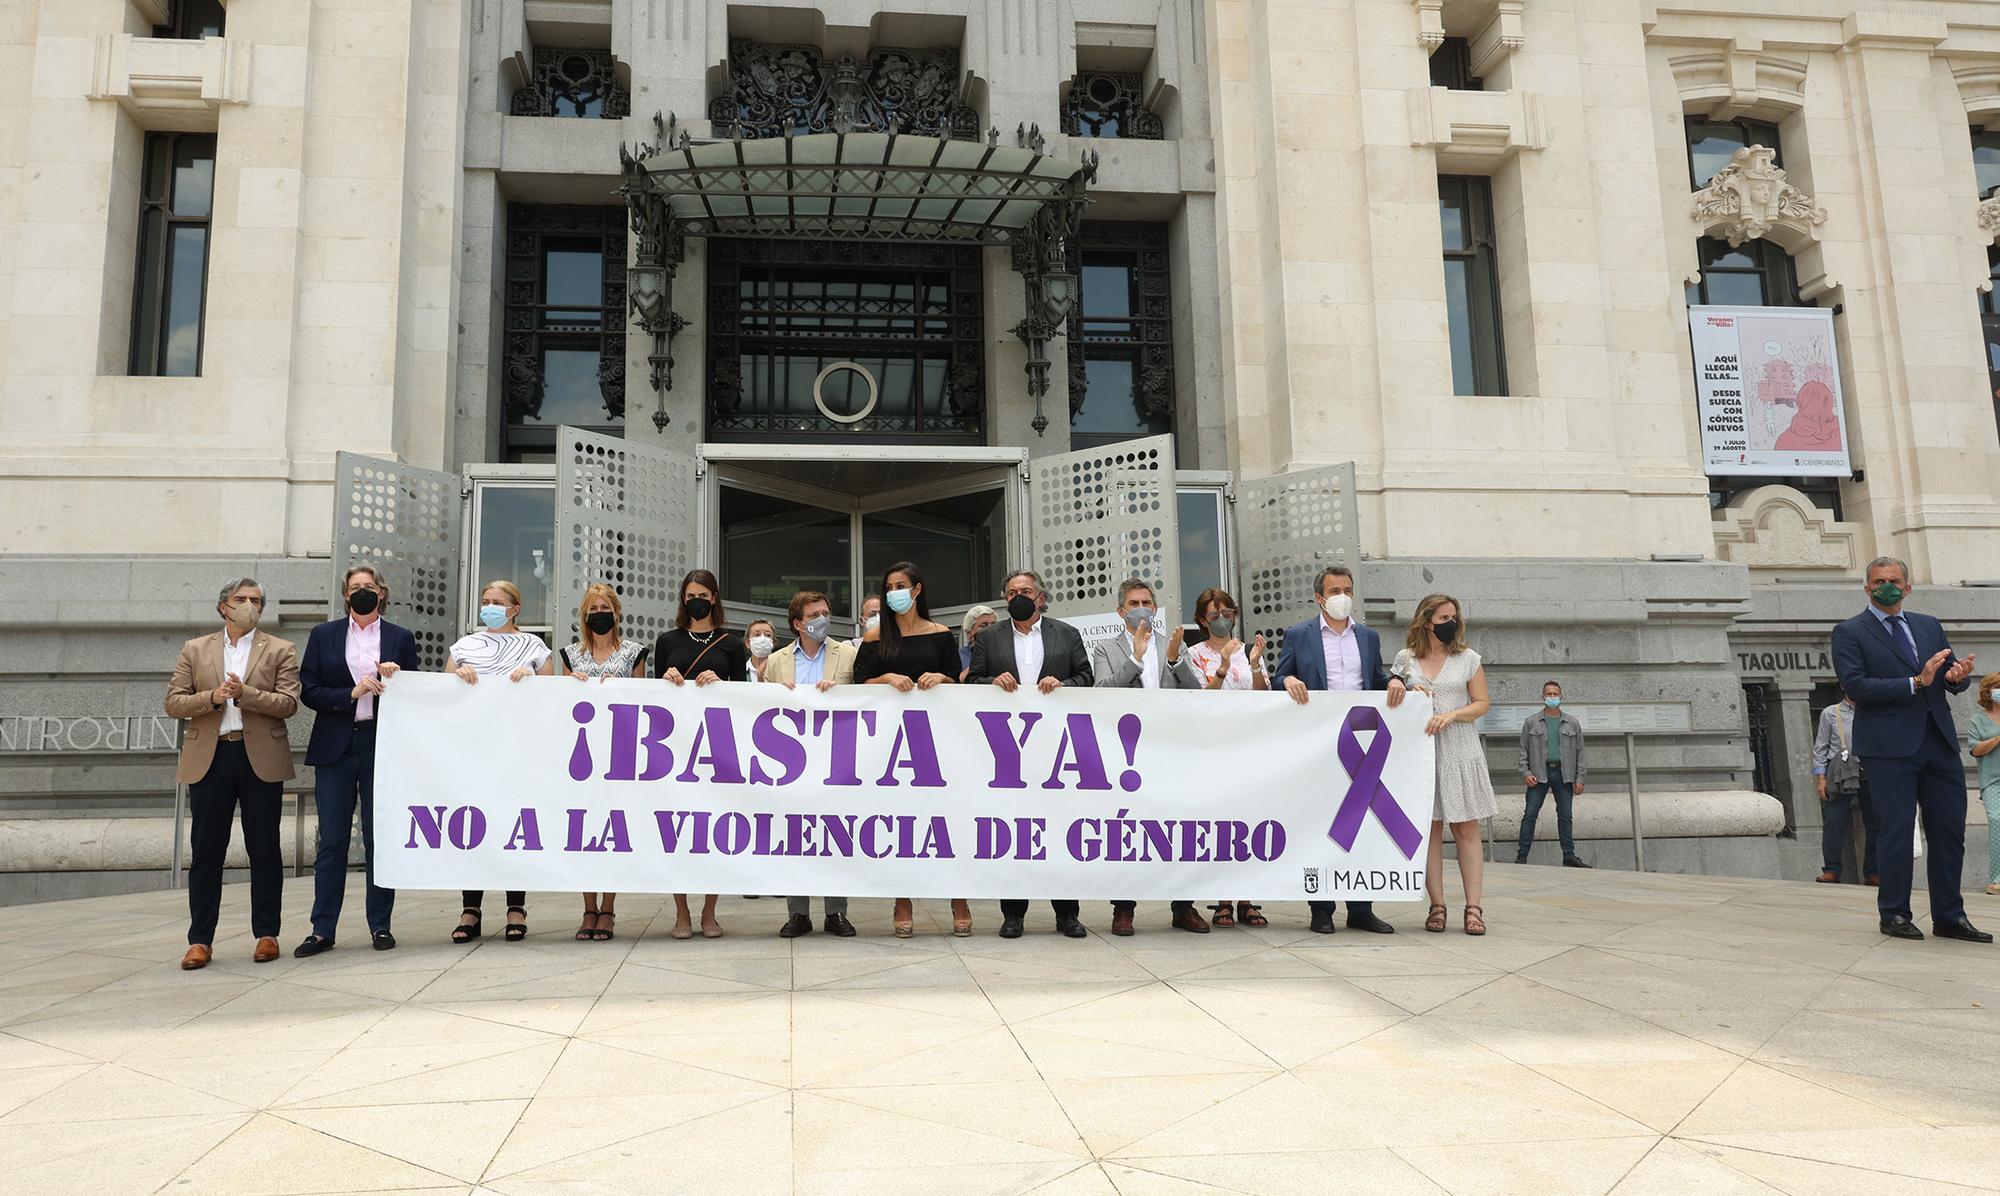 Minuto de silencio asesinato machista Ayuntamiento Madrid